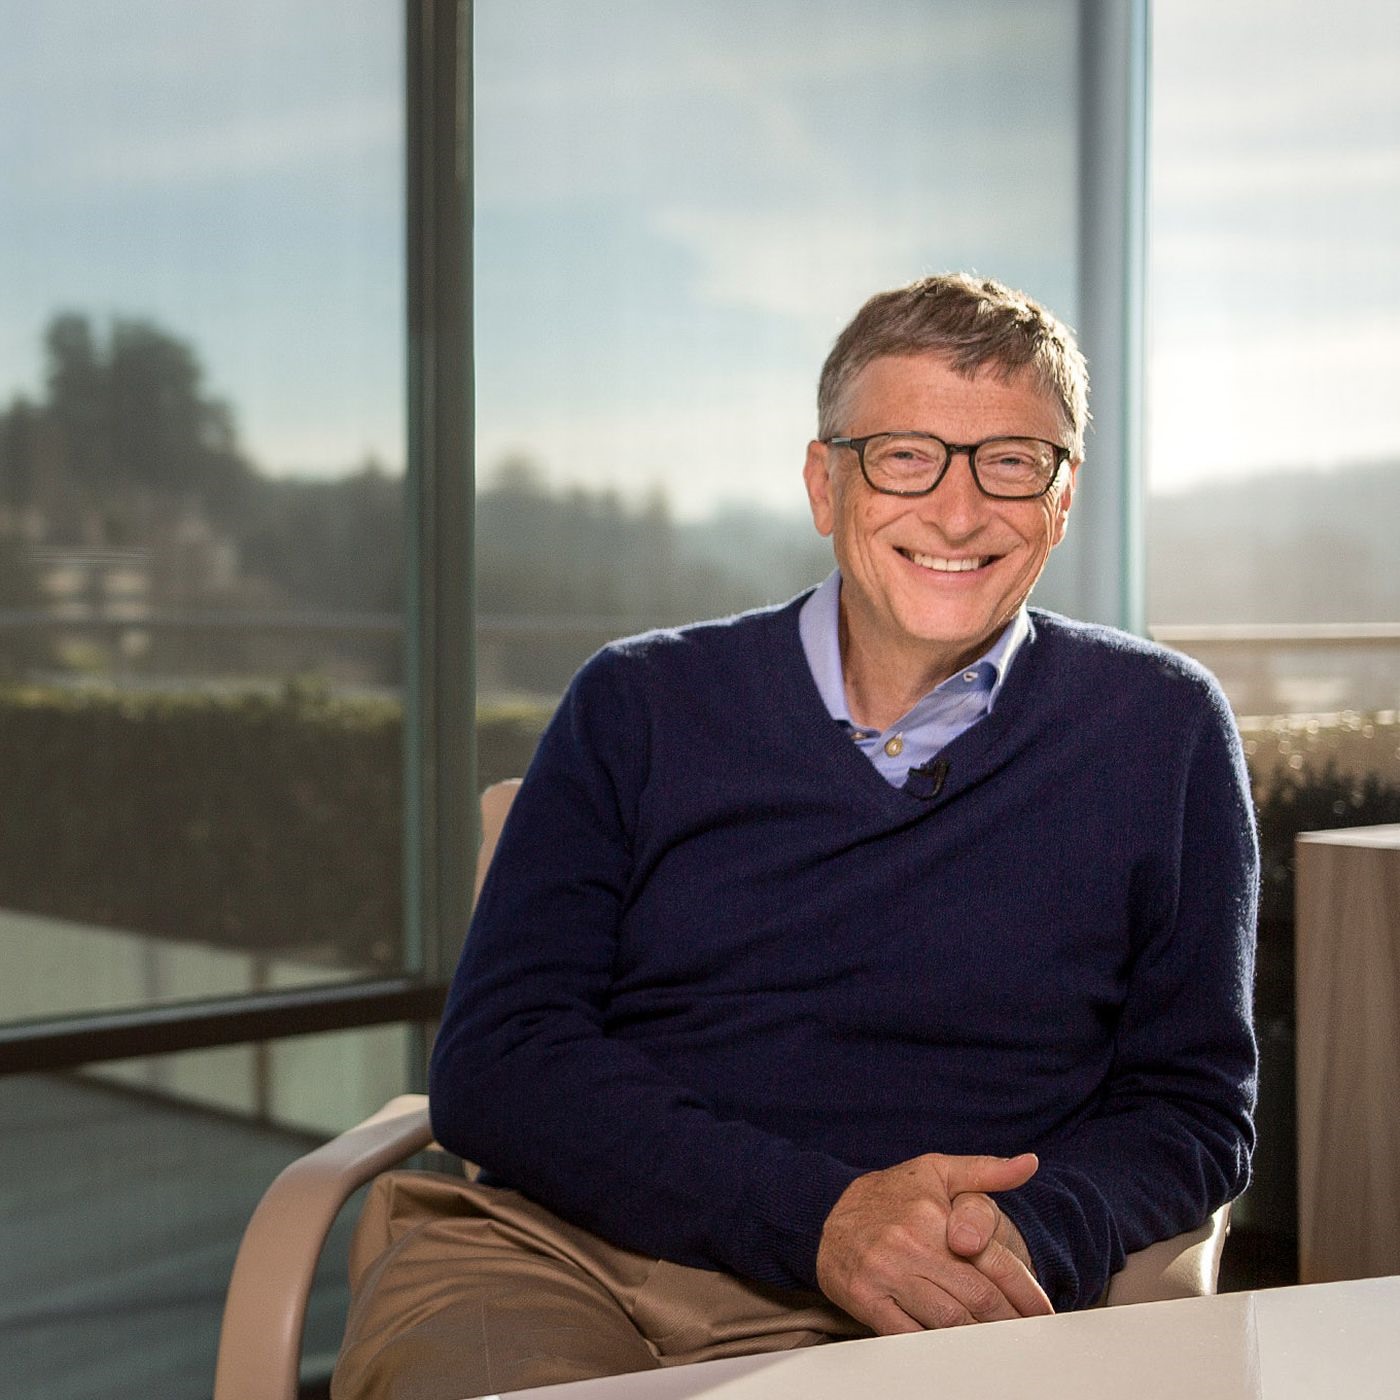 Theo Forbes, tính đến ngày 24.2 tài sản của Bill Gates lên đến 112,6 tỉ USD (tăng 15,6 tỉ USD so với hồi giữa tháng 9.2019). Ảnh: The Verge